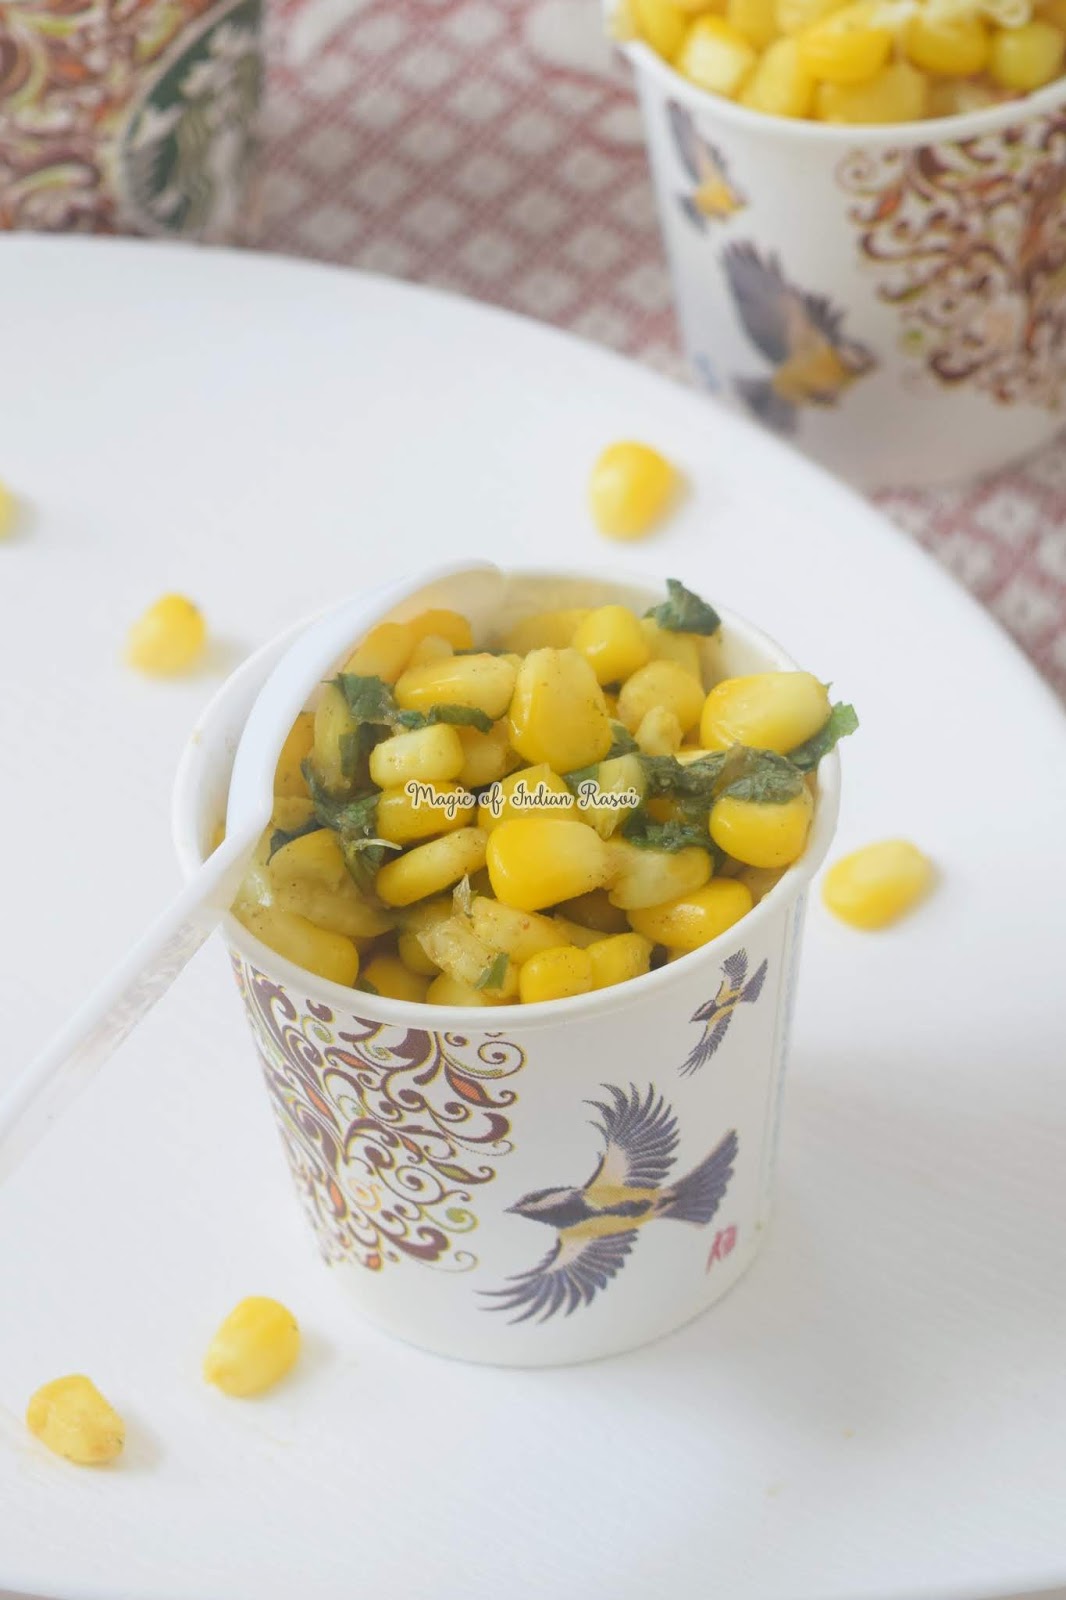 Corn in Cup - 3 flavours - Butter Masala, Minty Pani Puri, Cheese & Herbs - बटर कॉर्न, पानी पूरी कॉर्न और चीज़ हर्ब्स कॉर्न रेसिपी - Priya R Sweet - Magic of Indian Rasoi